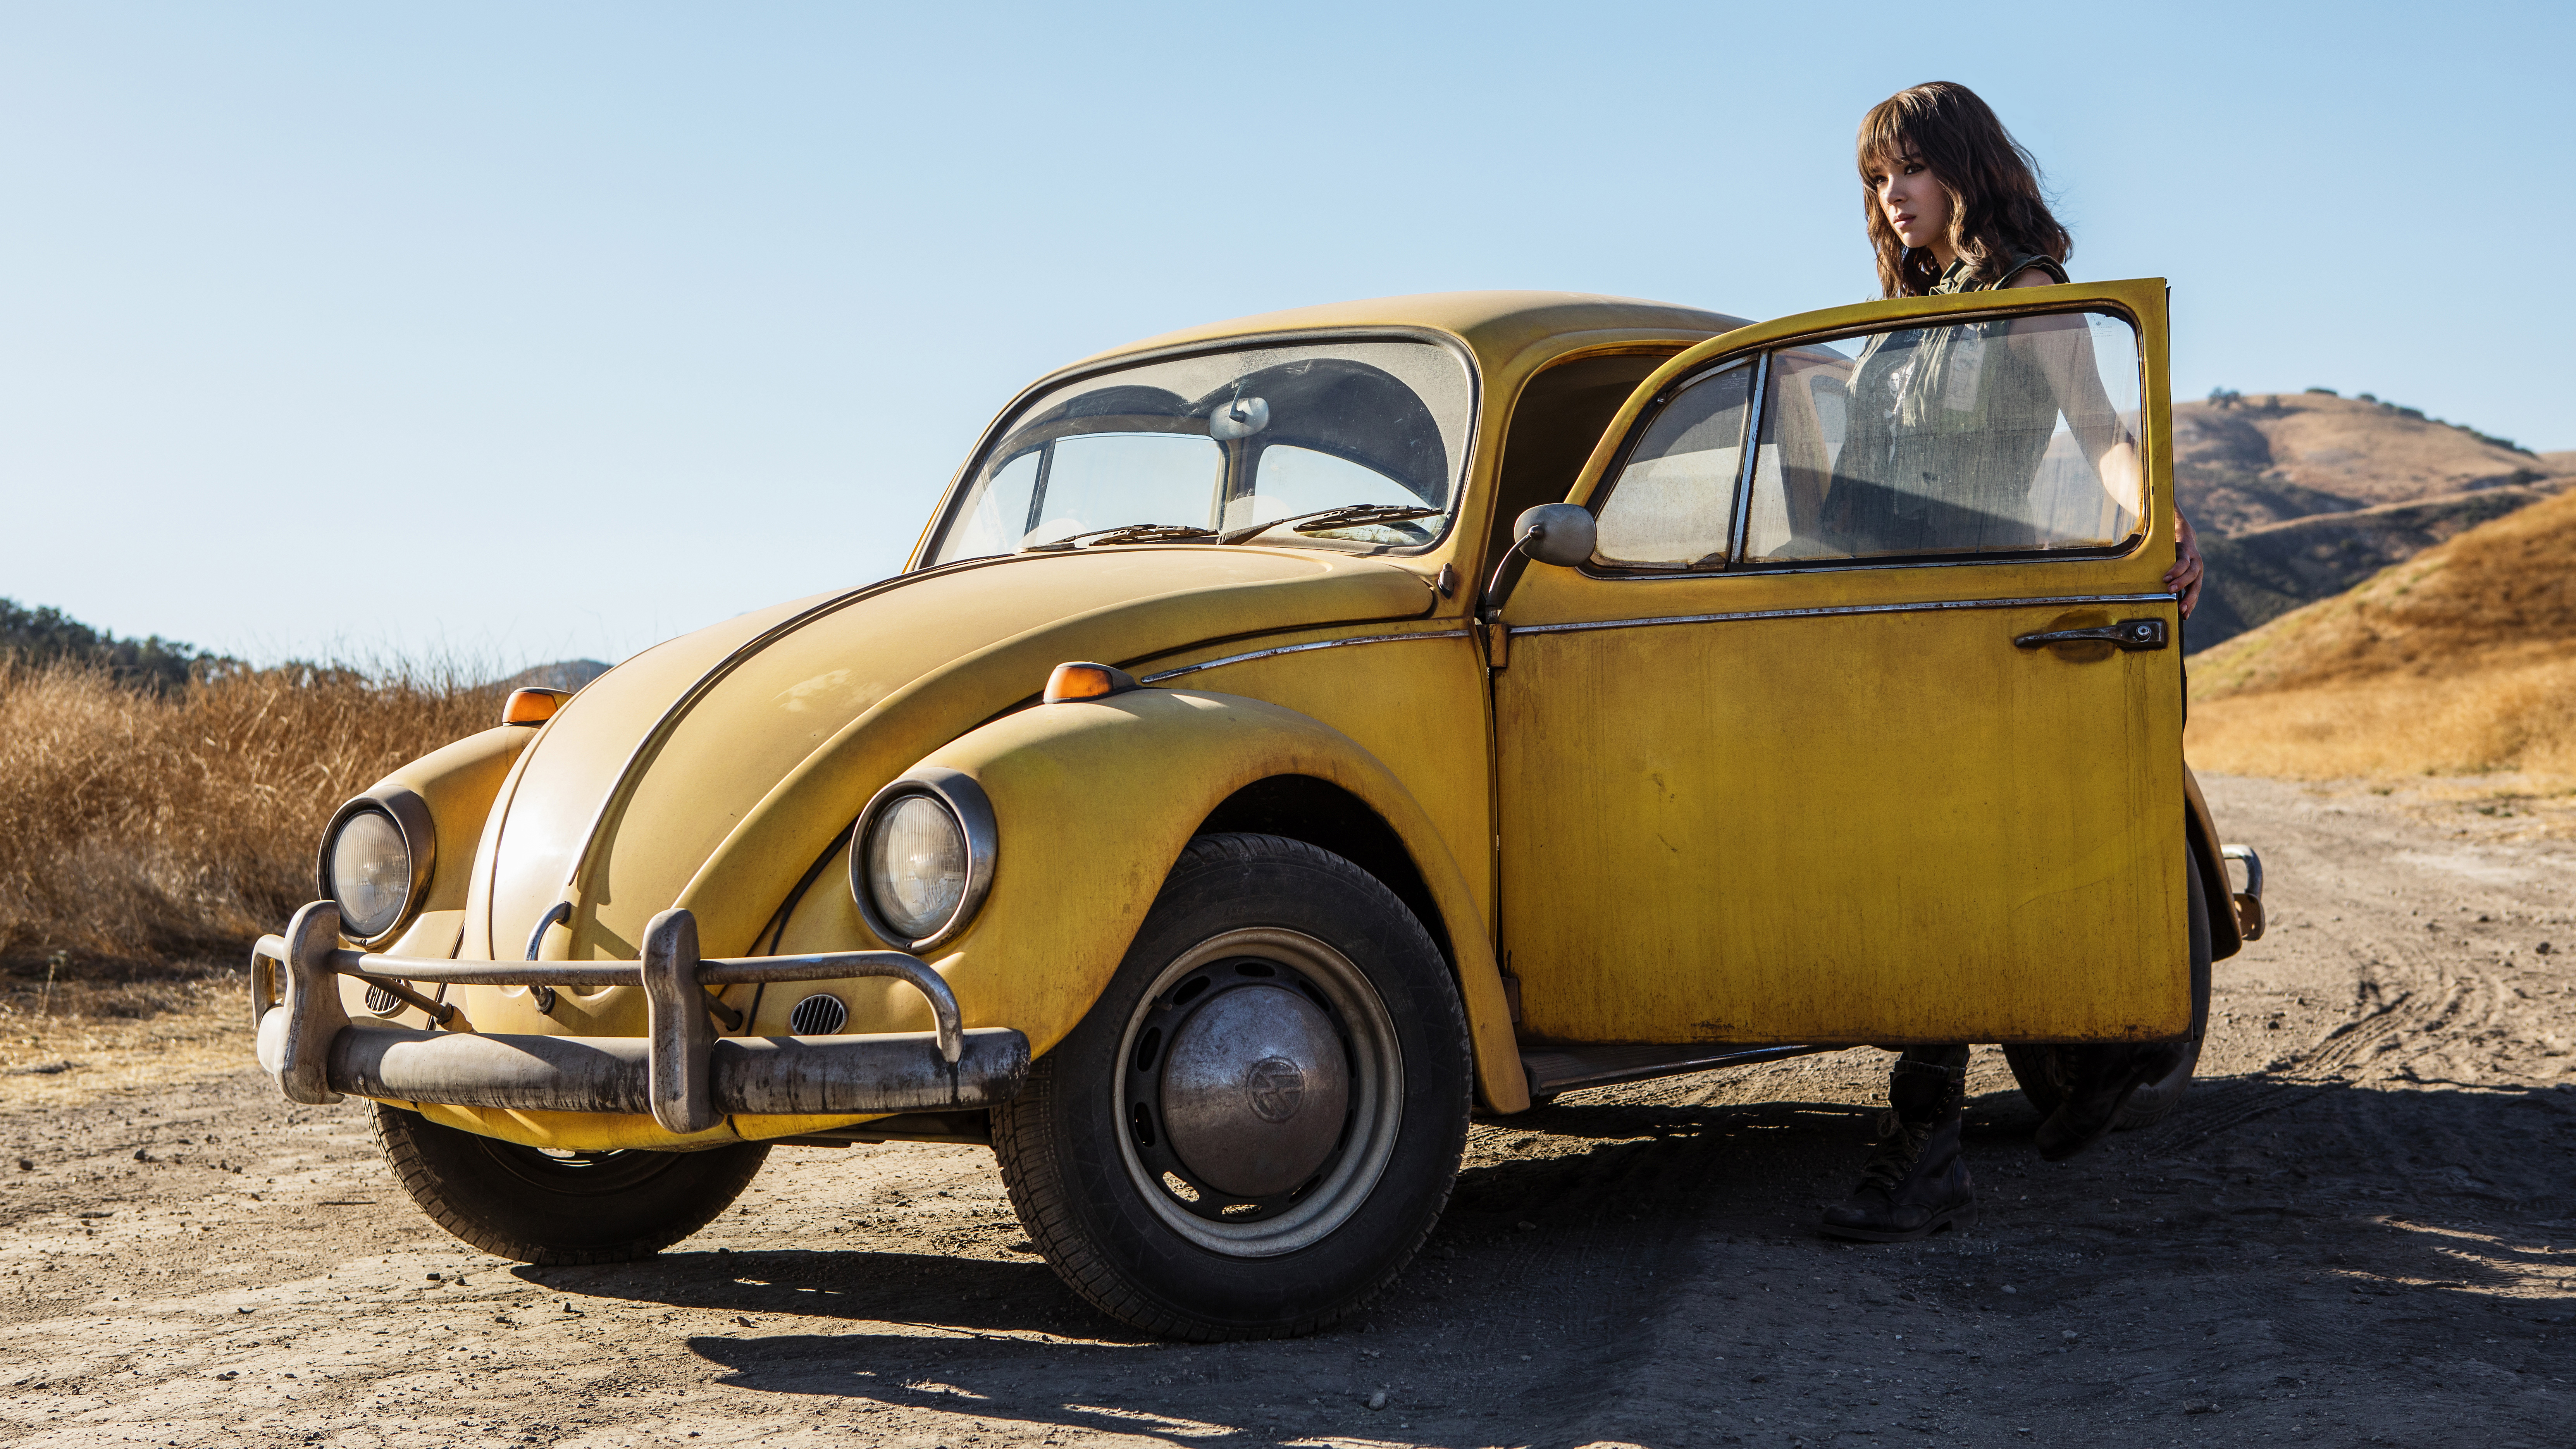 Hailee Steinfeld in Bumblebee Movie 2018 5K Wallpapers